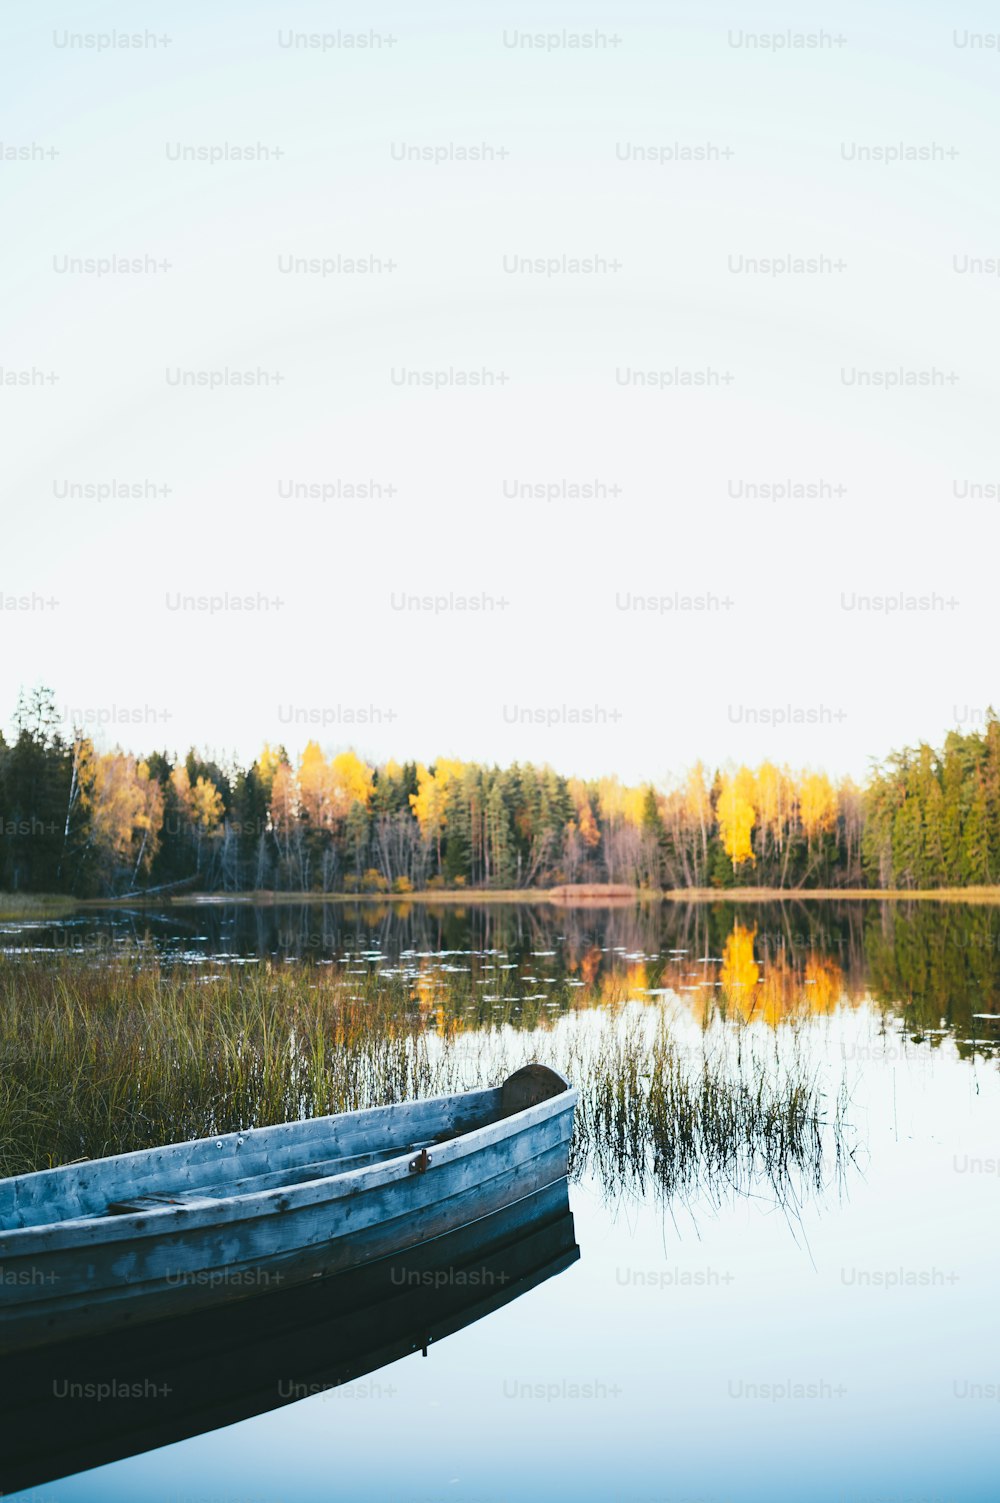 Ein Boot, das auf einem See neben einem Wald sitzt